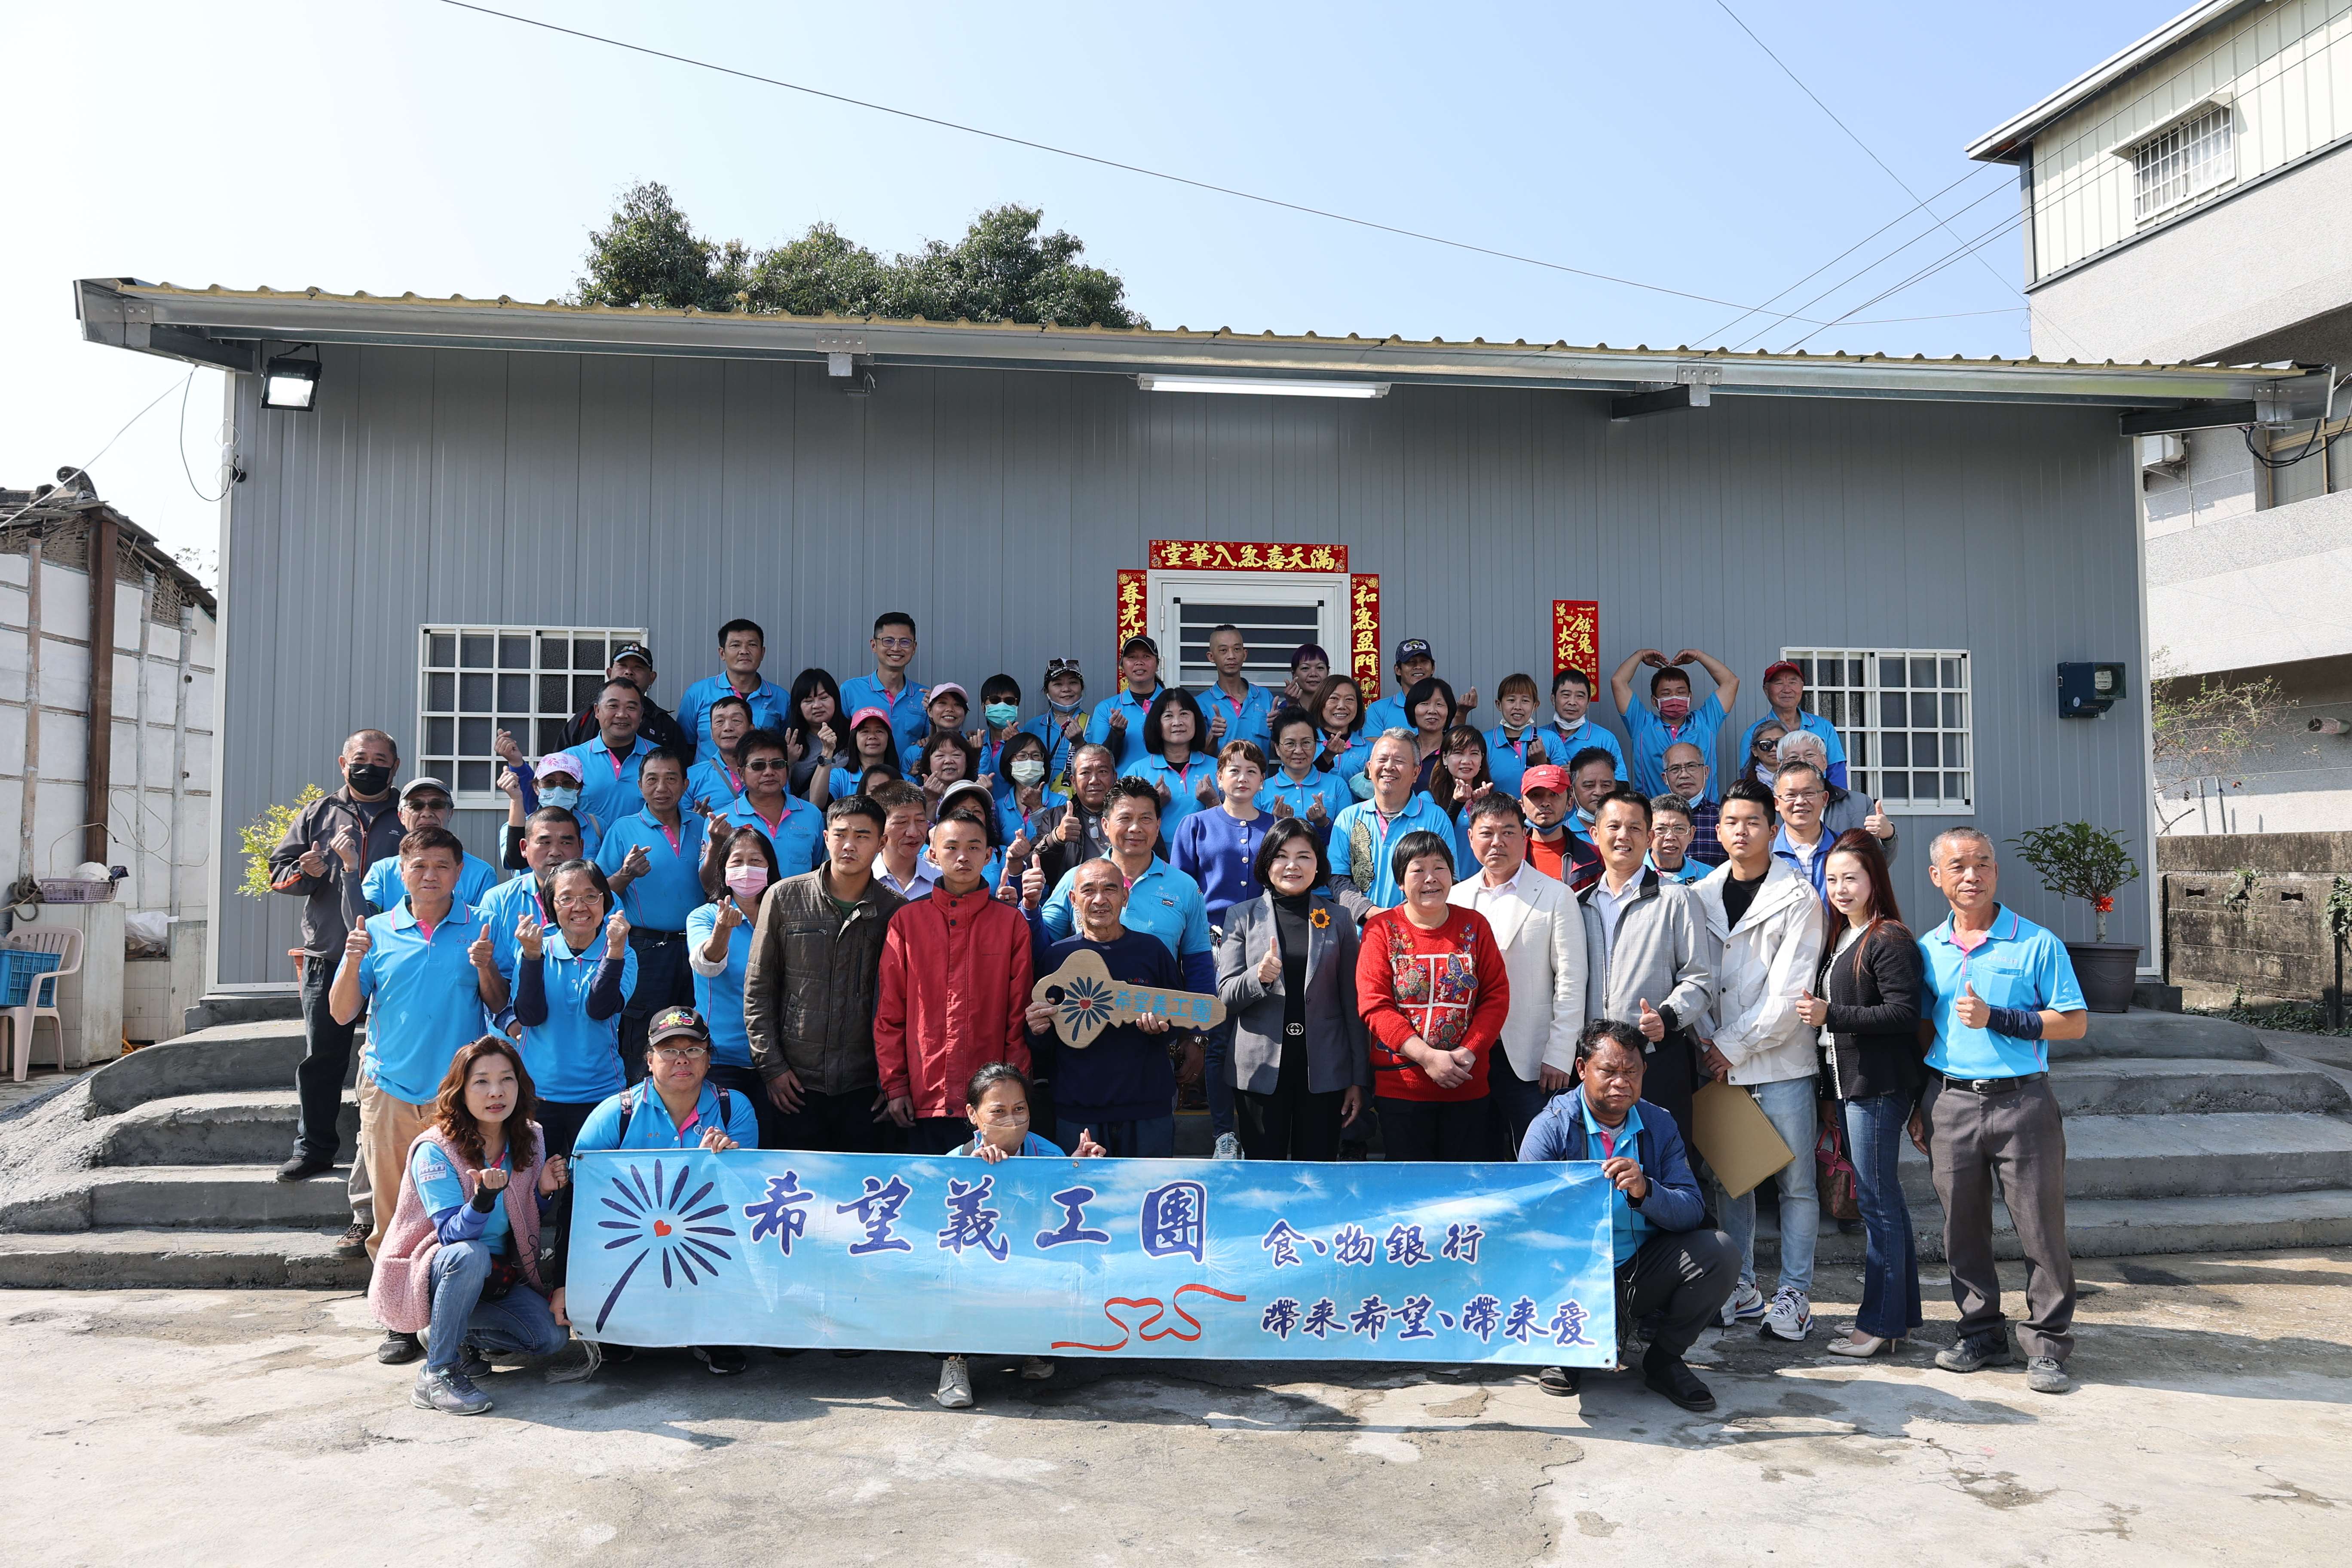 台灣希望義工團協助古坑陳家重建家園，張麗善出席贈鑰儀式給予祝賀，並代替縣民向義工團表達感謝。